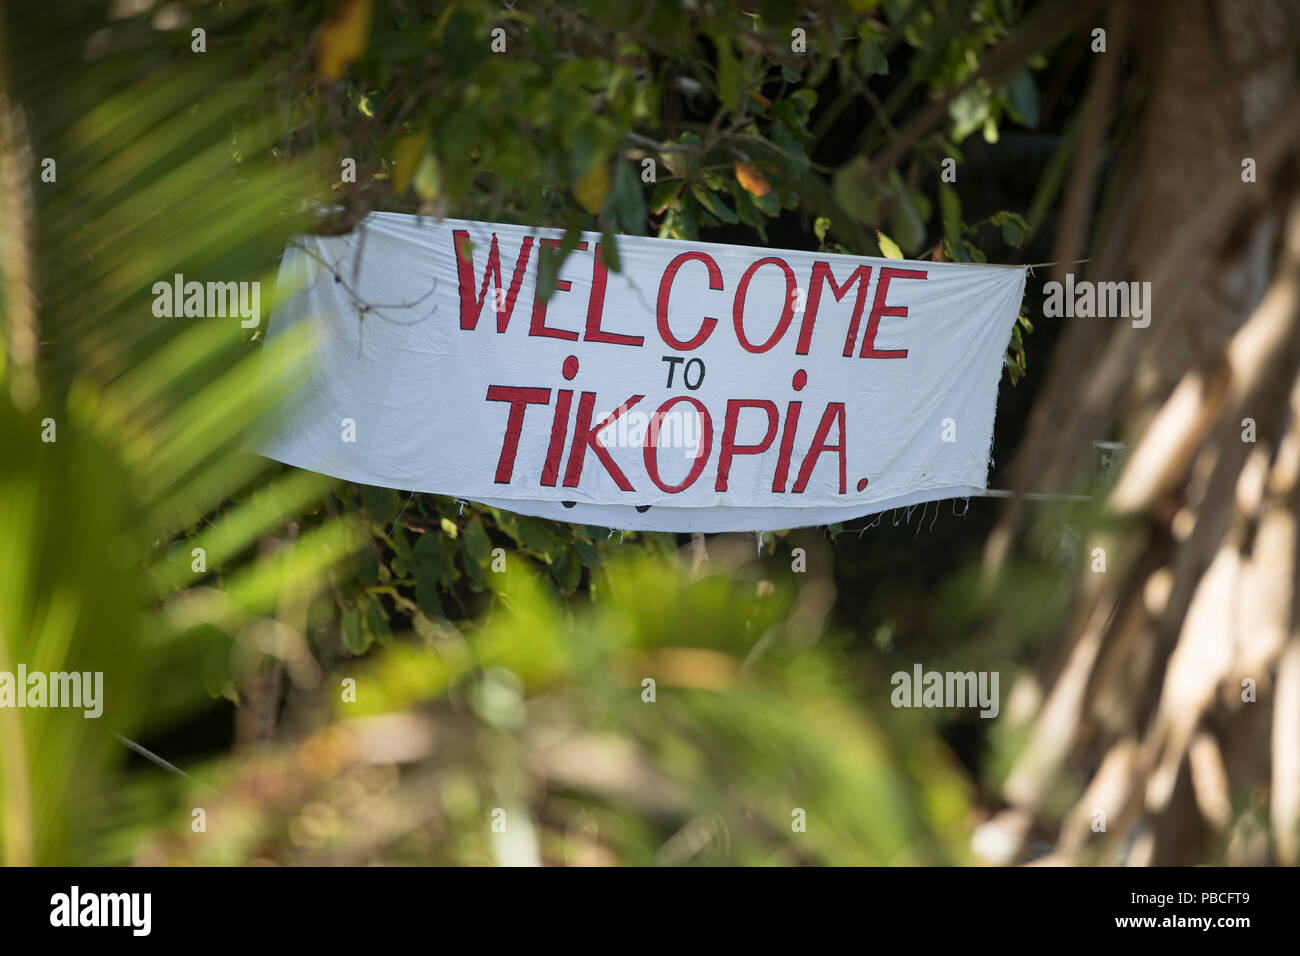 Auf Tikopia Willkommen anmelden, die Salomonen Stockfoto